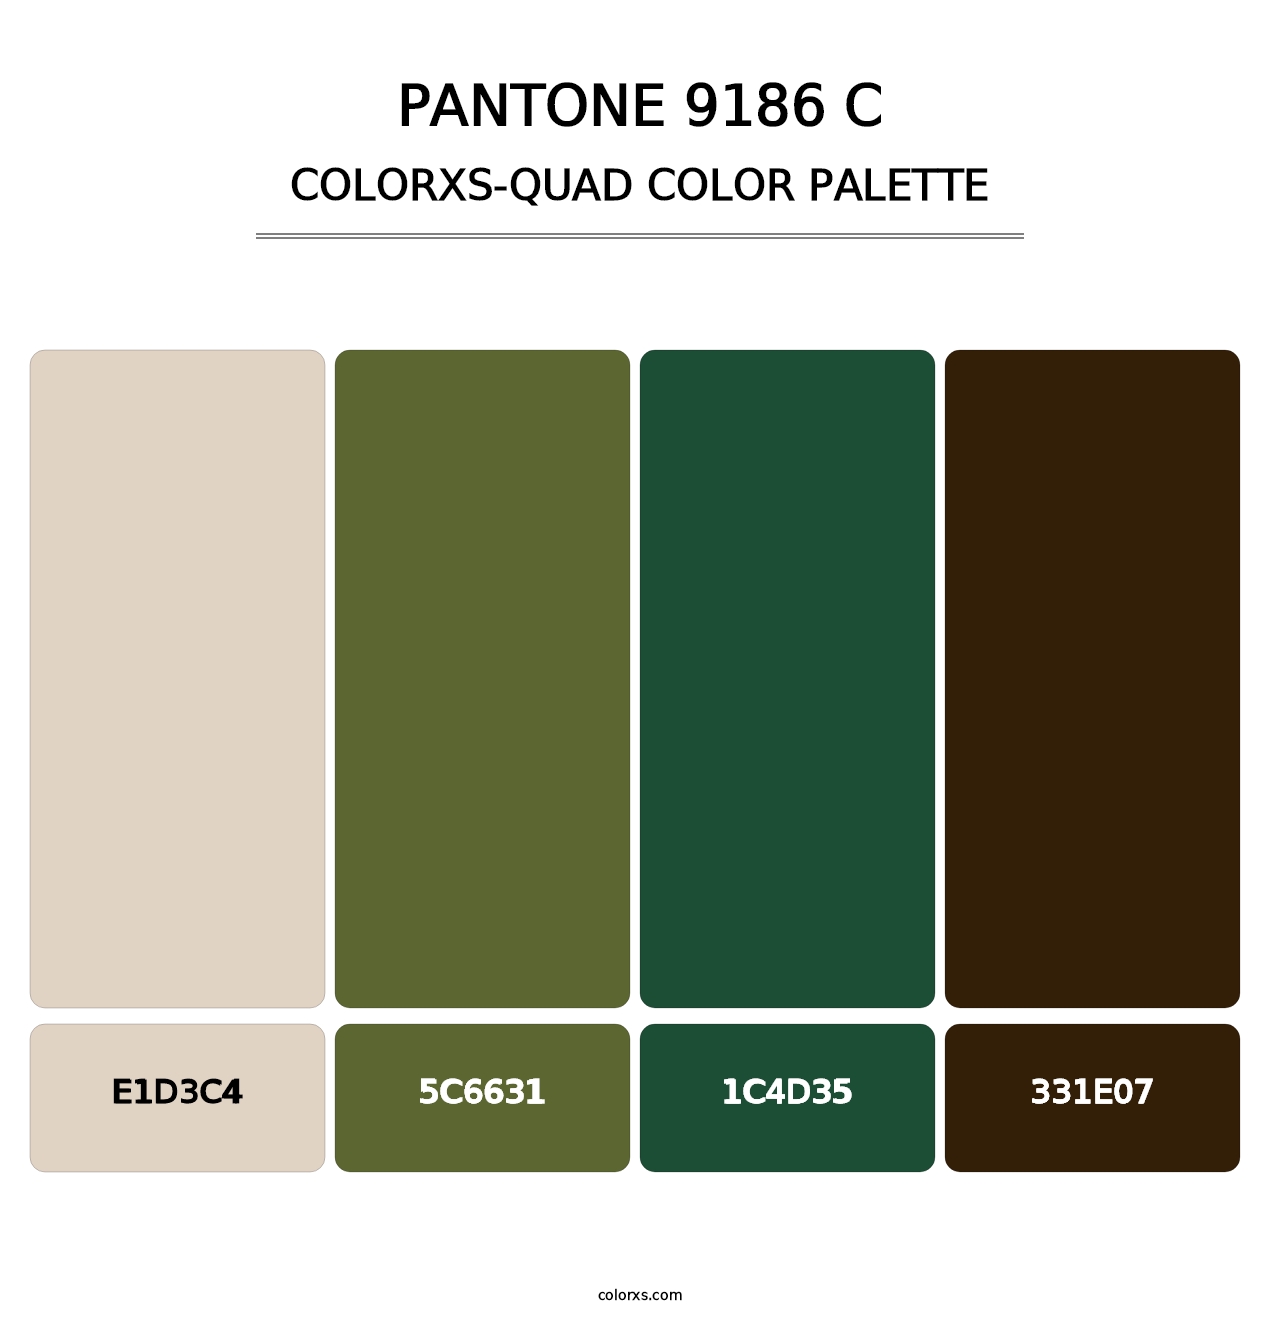 PANTONE 9186 C - Colorxs Quad Palette